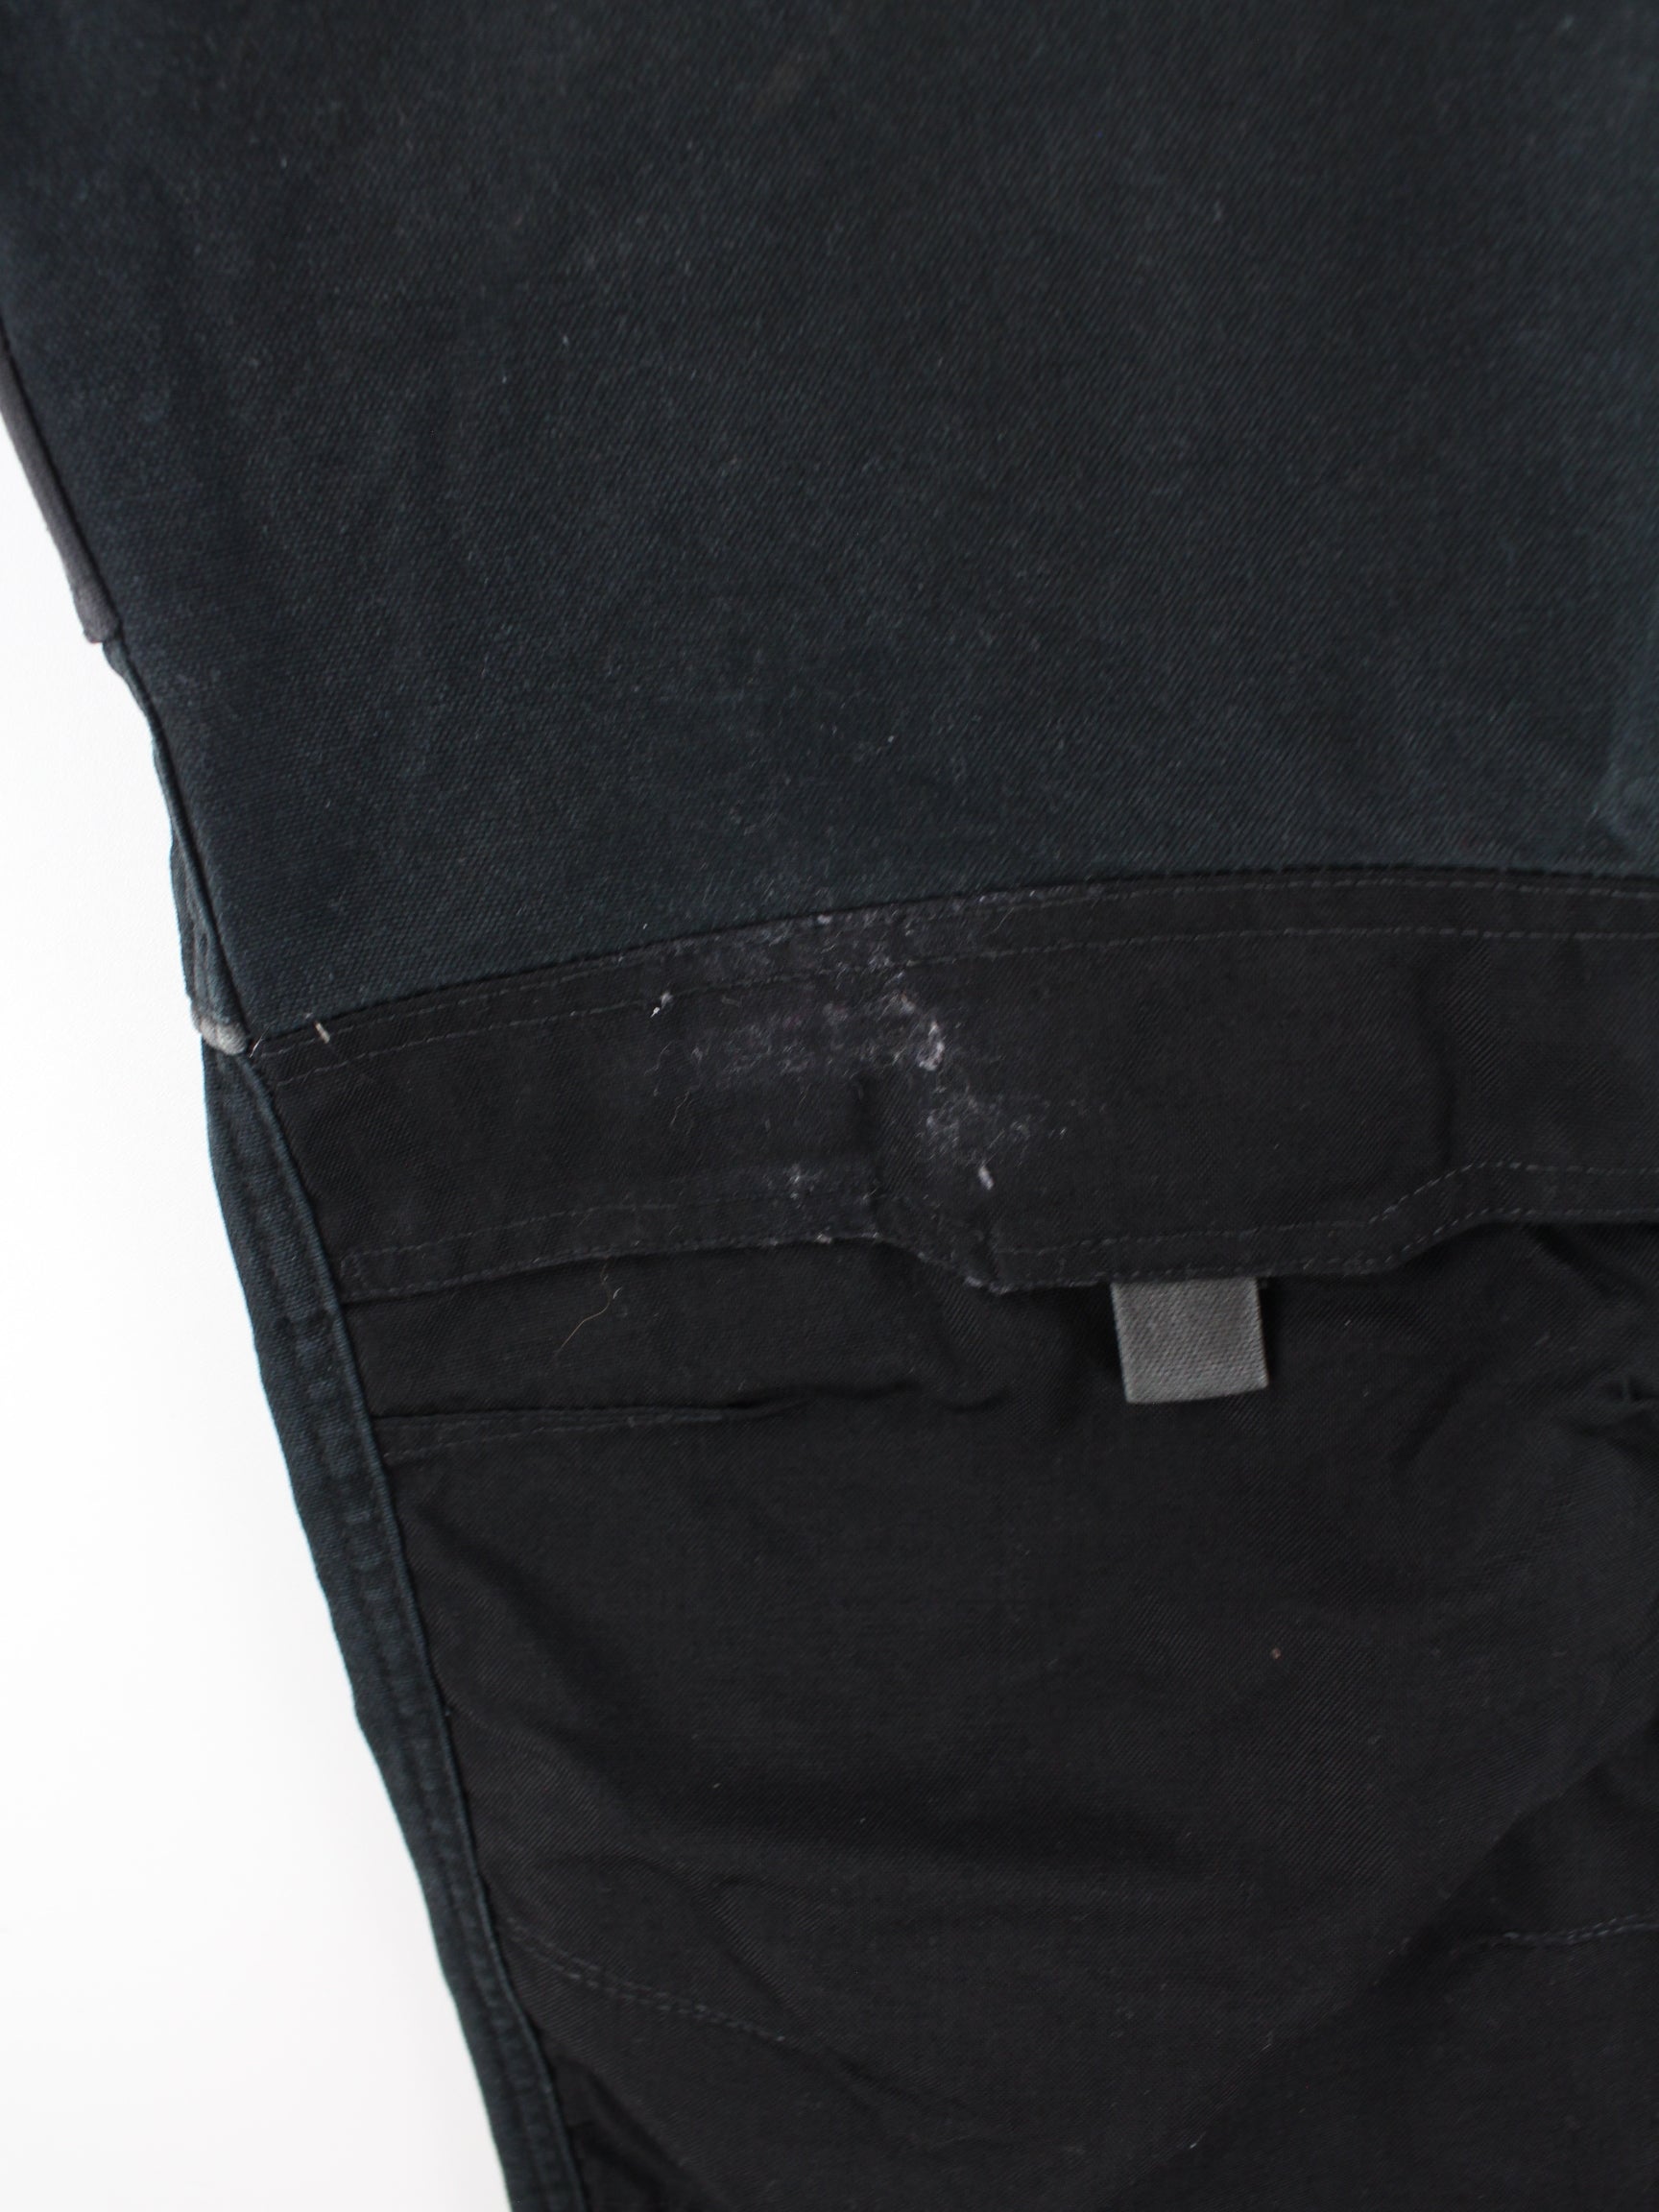 52 Black Trousers Work L Wear Work – Peeces / Dickies